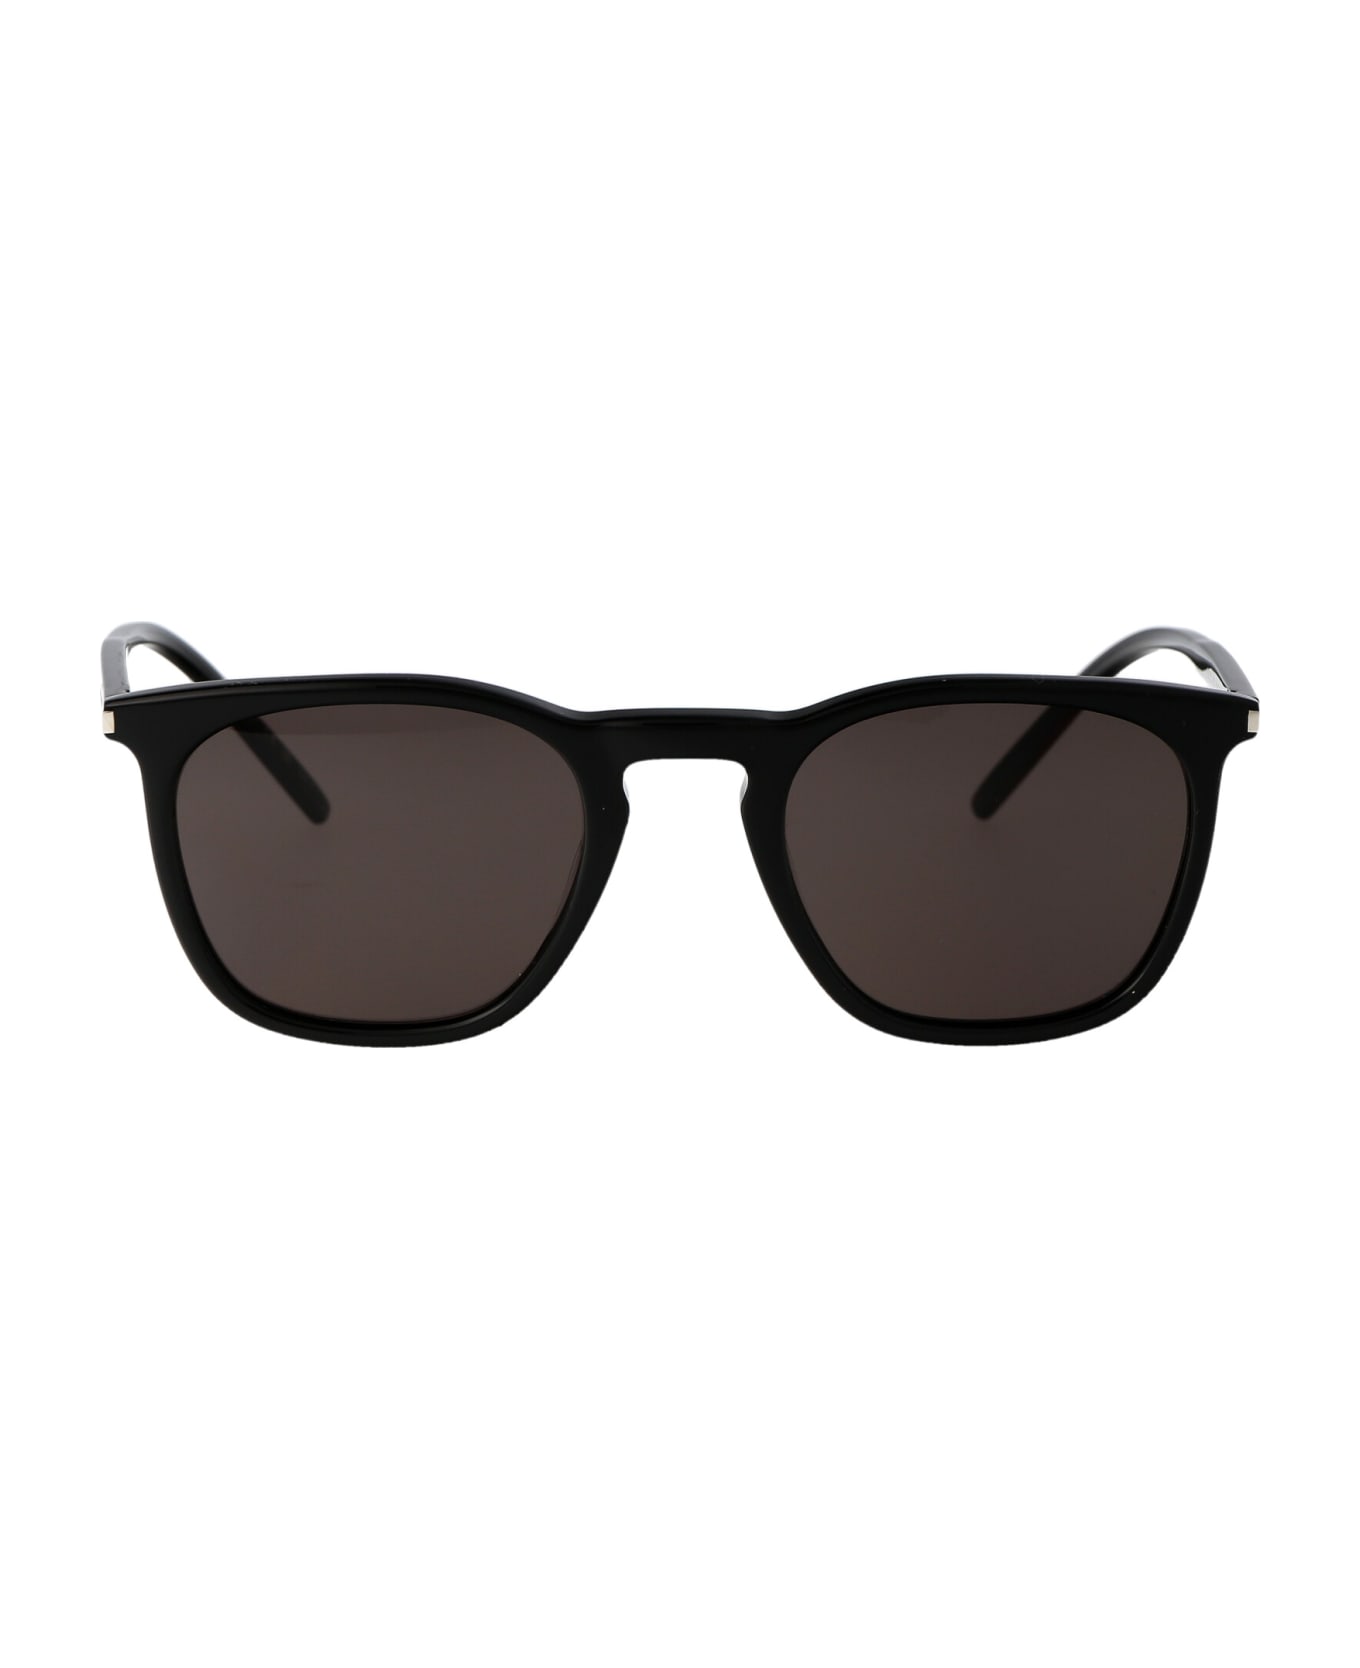 Saint Laurent Eyewear Sl 623 Sunglasses - 001 BLACK BLACK BLACK